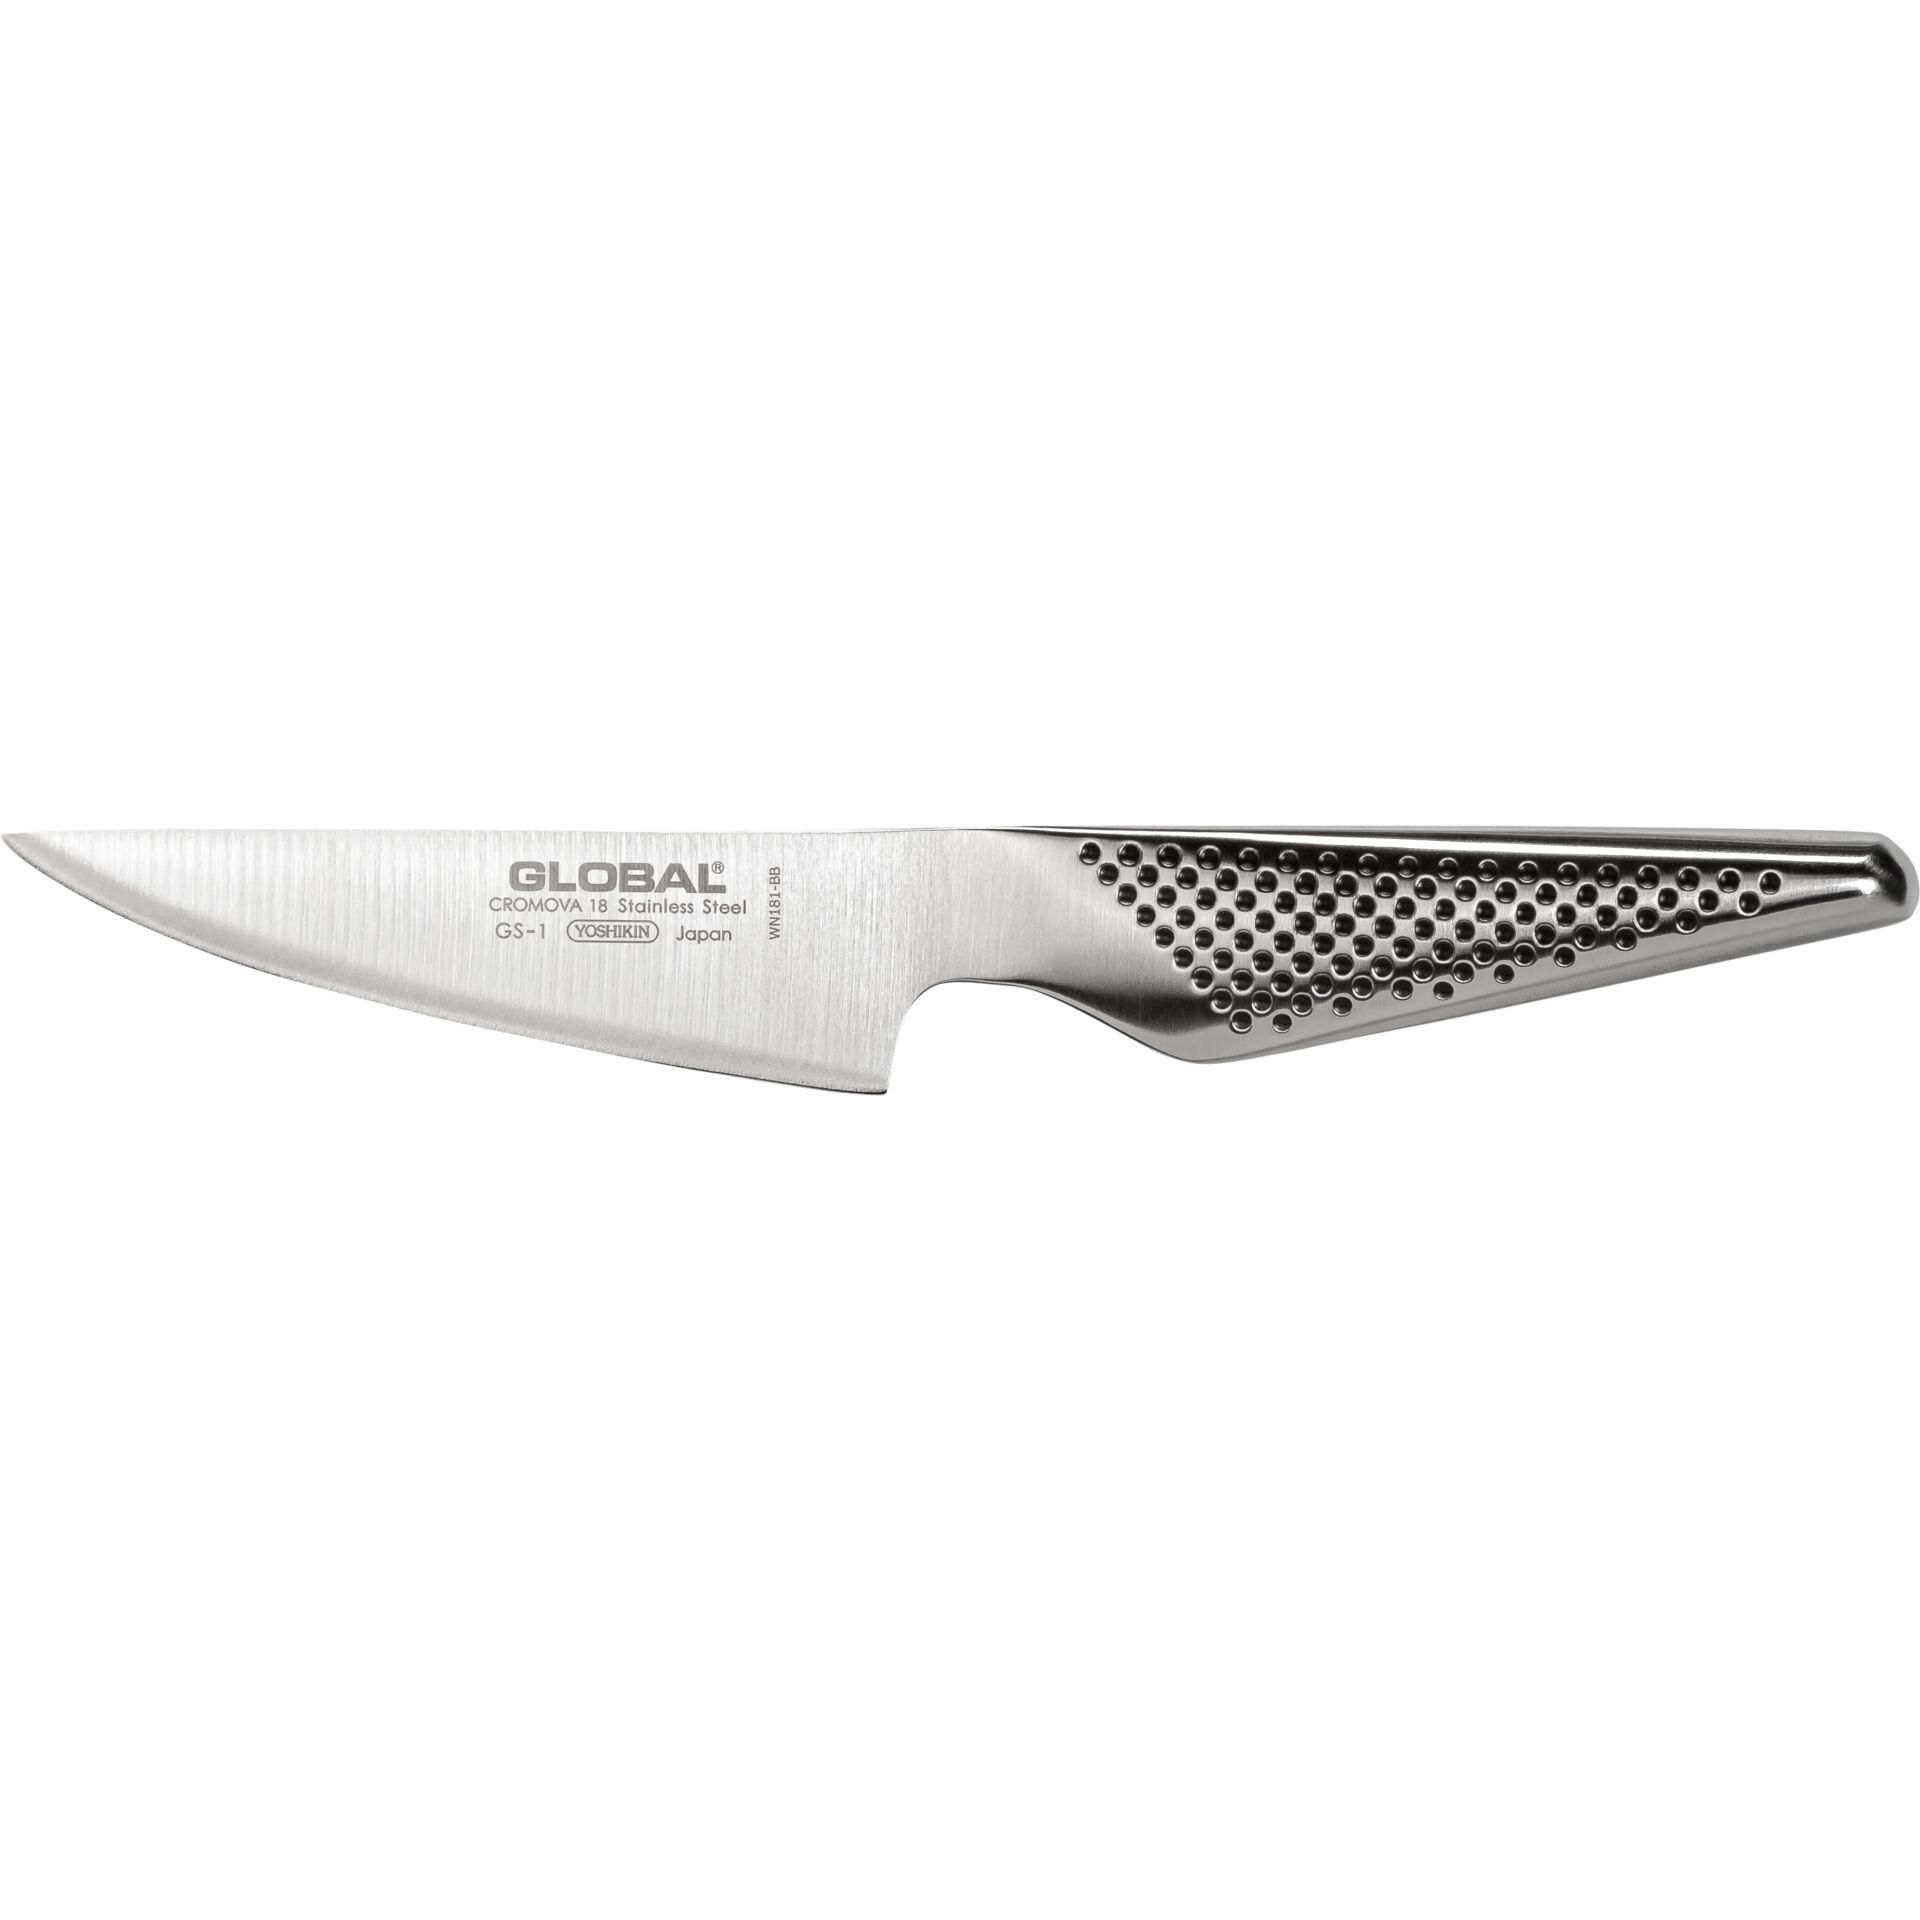 Global coltello GS-01, 11 cm